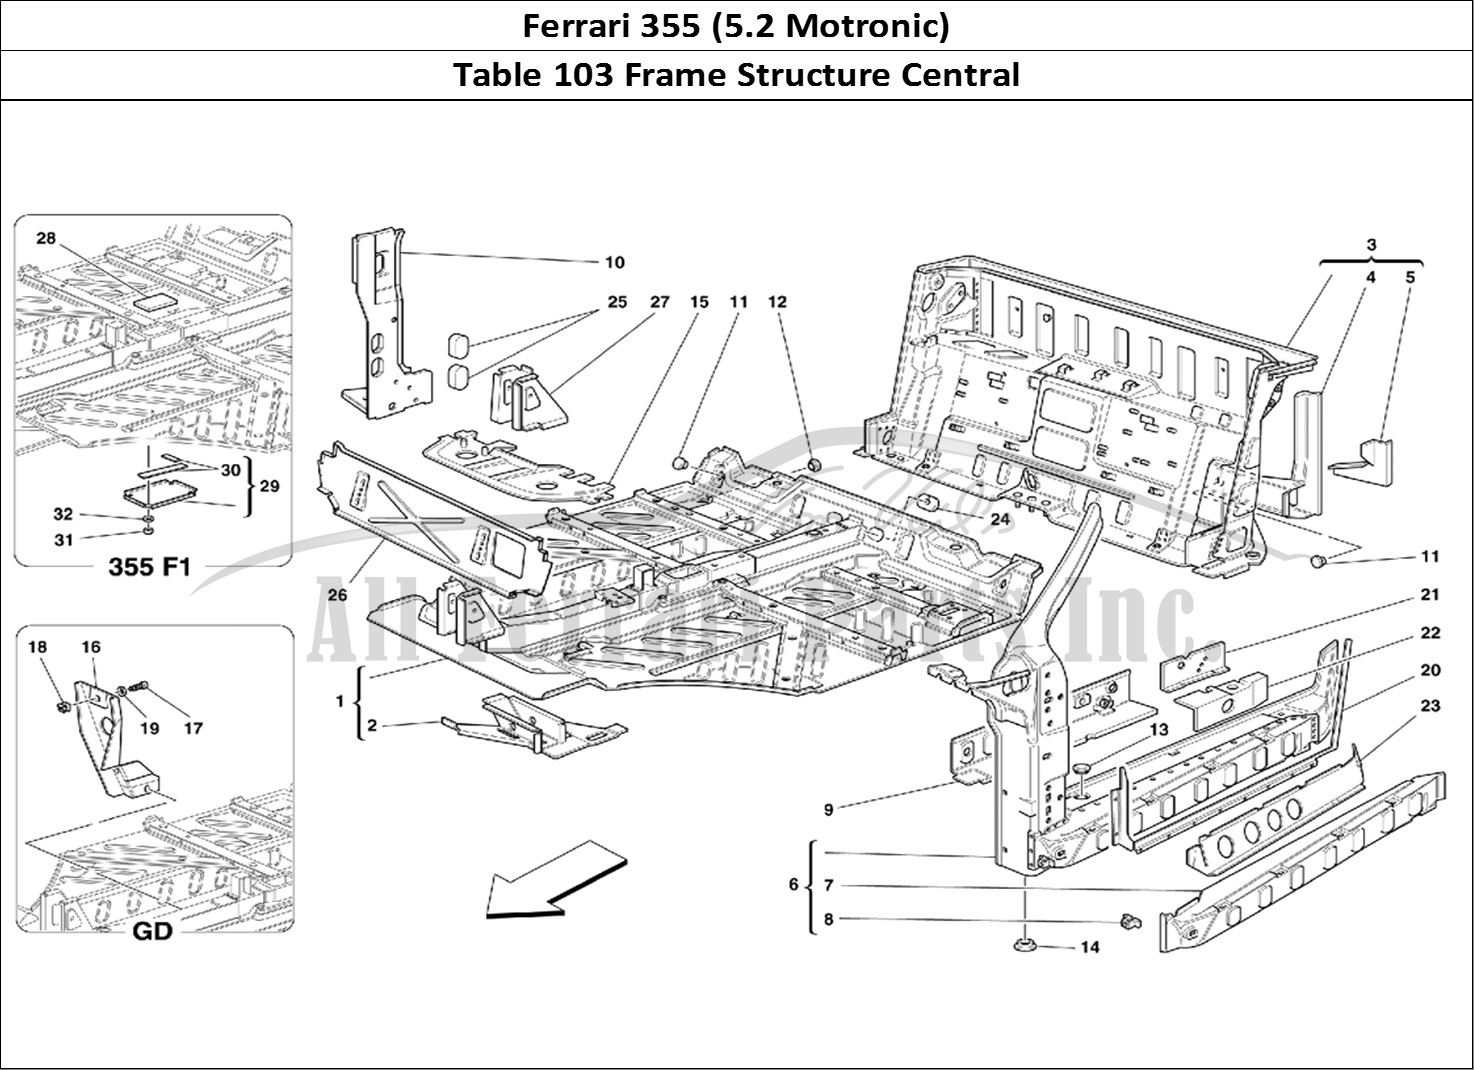 Ferrari Parts Ferrari 355 (5.2 Motronic) Page 103 Central Part Structures